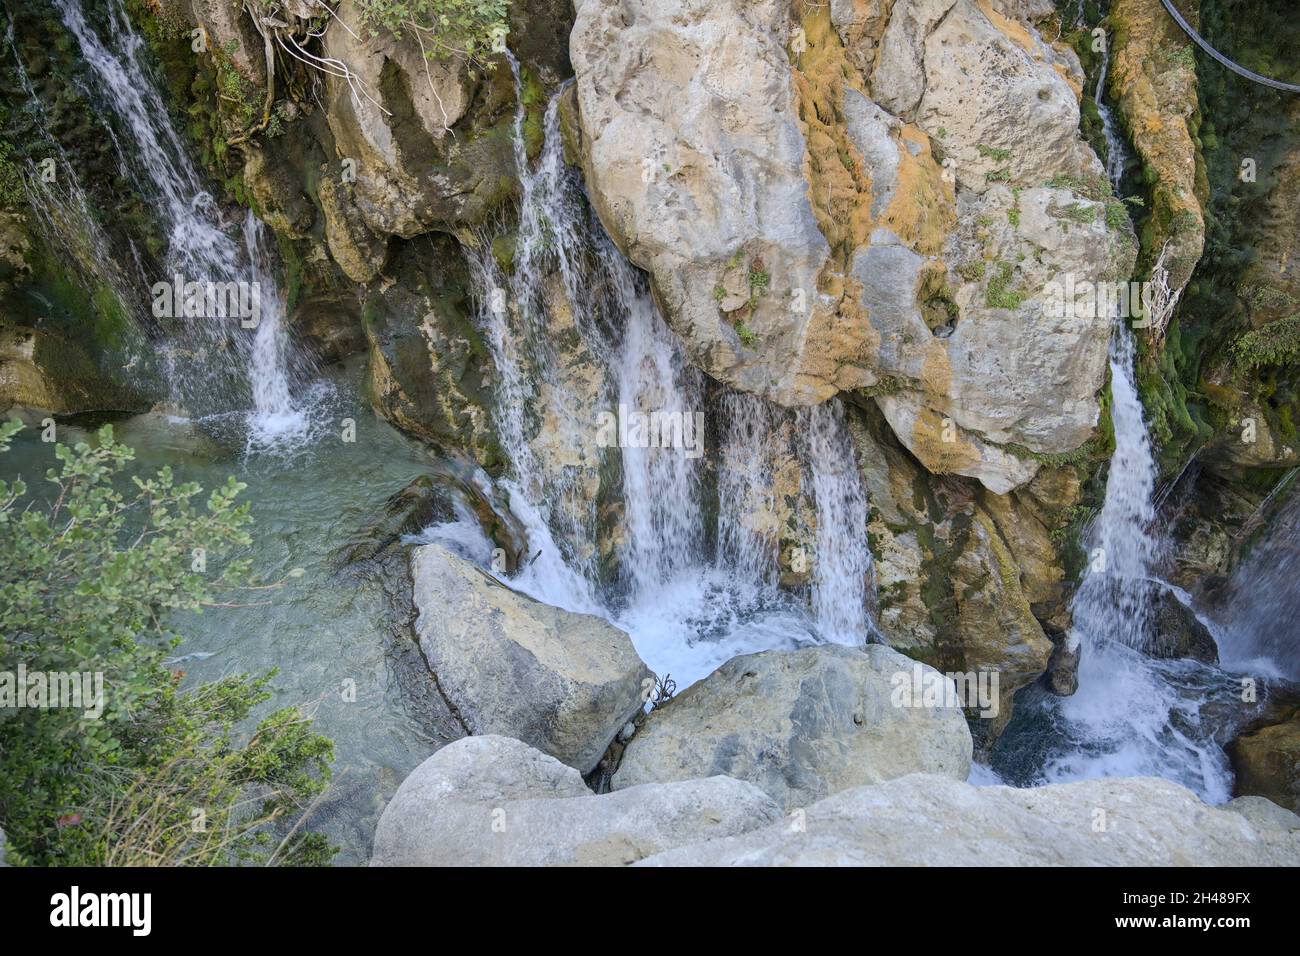 Wasserfall, Kourtaliotiko-Schlucht, Kreta, Griechenland Banque D'Images